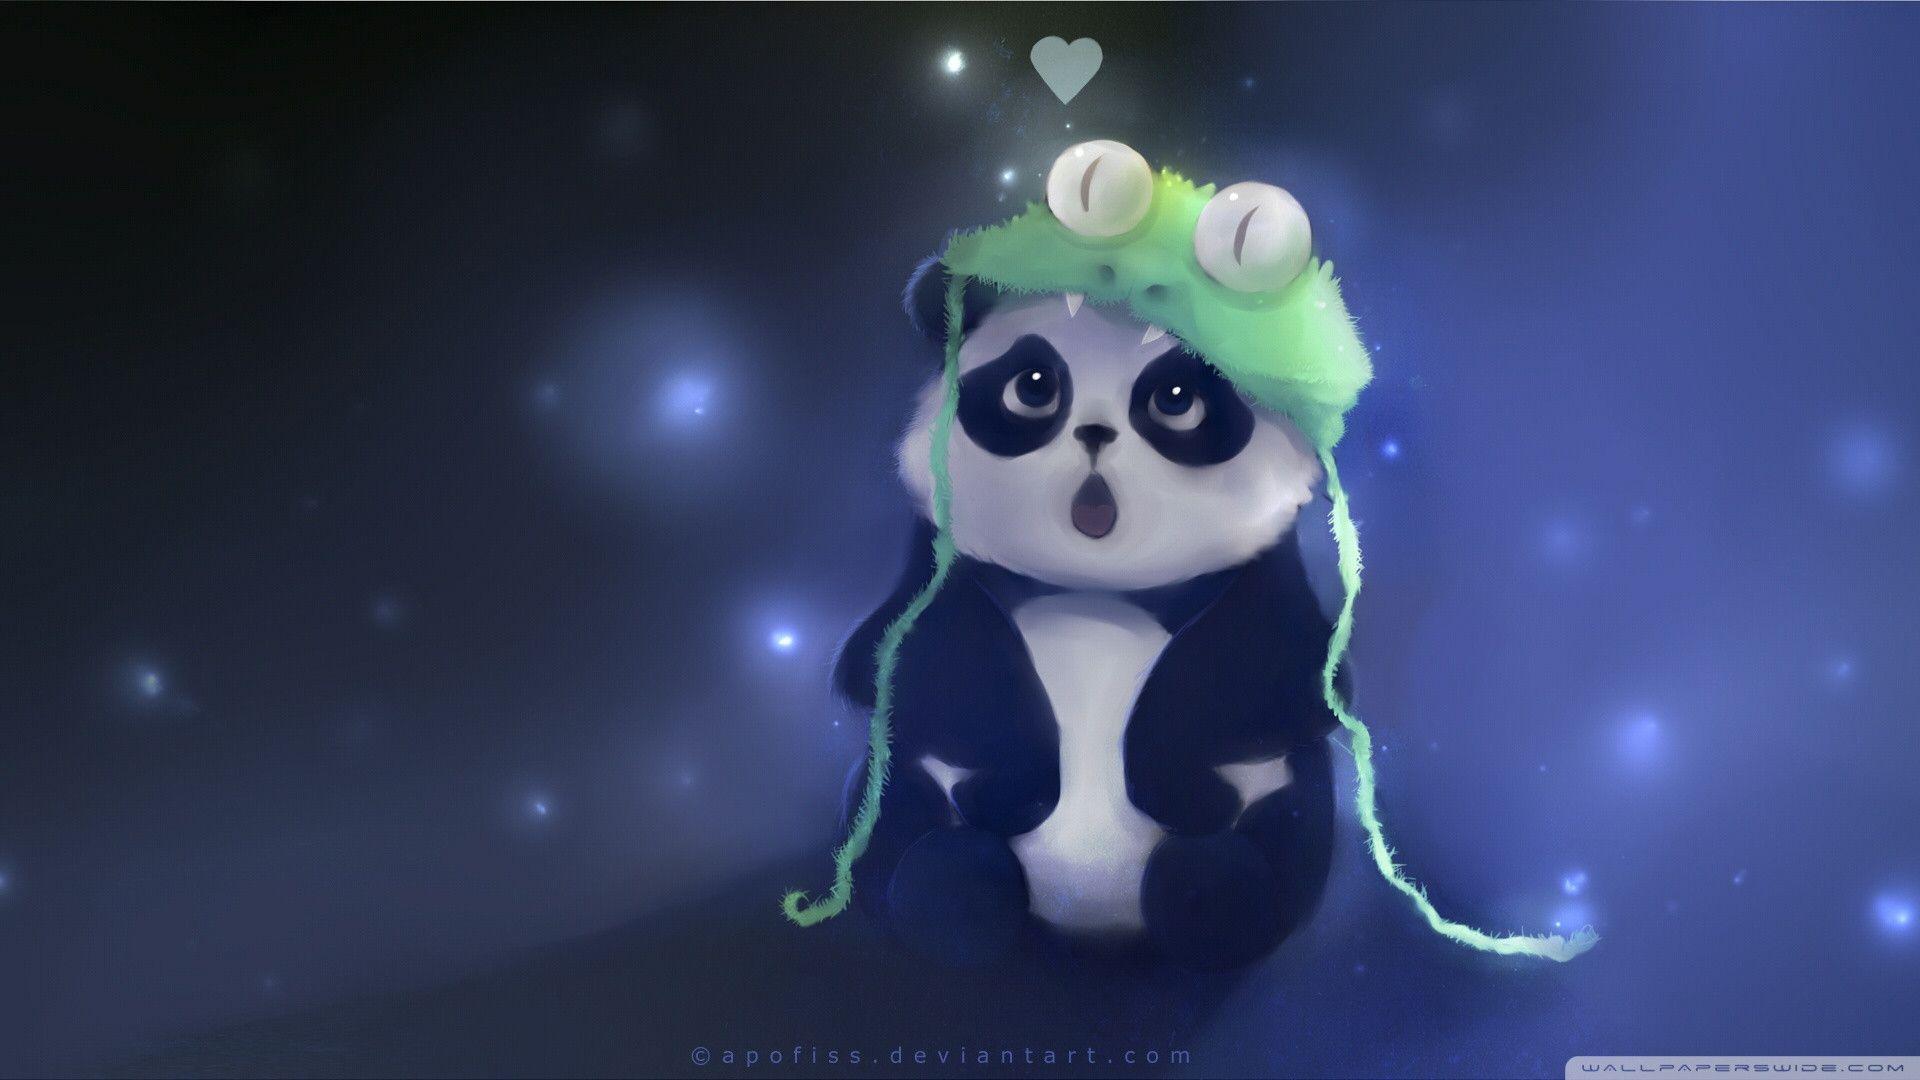 Cute Panda wallpaper